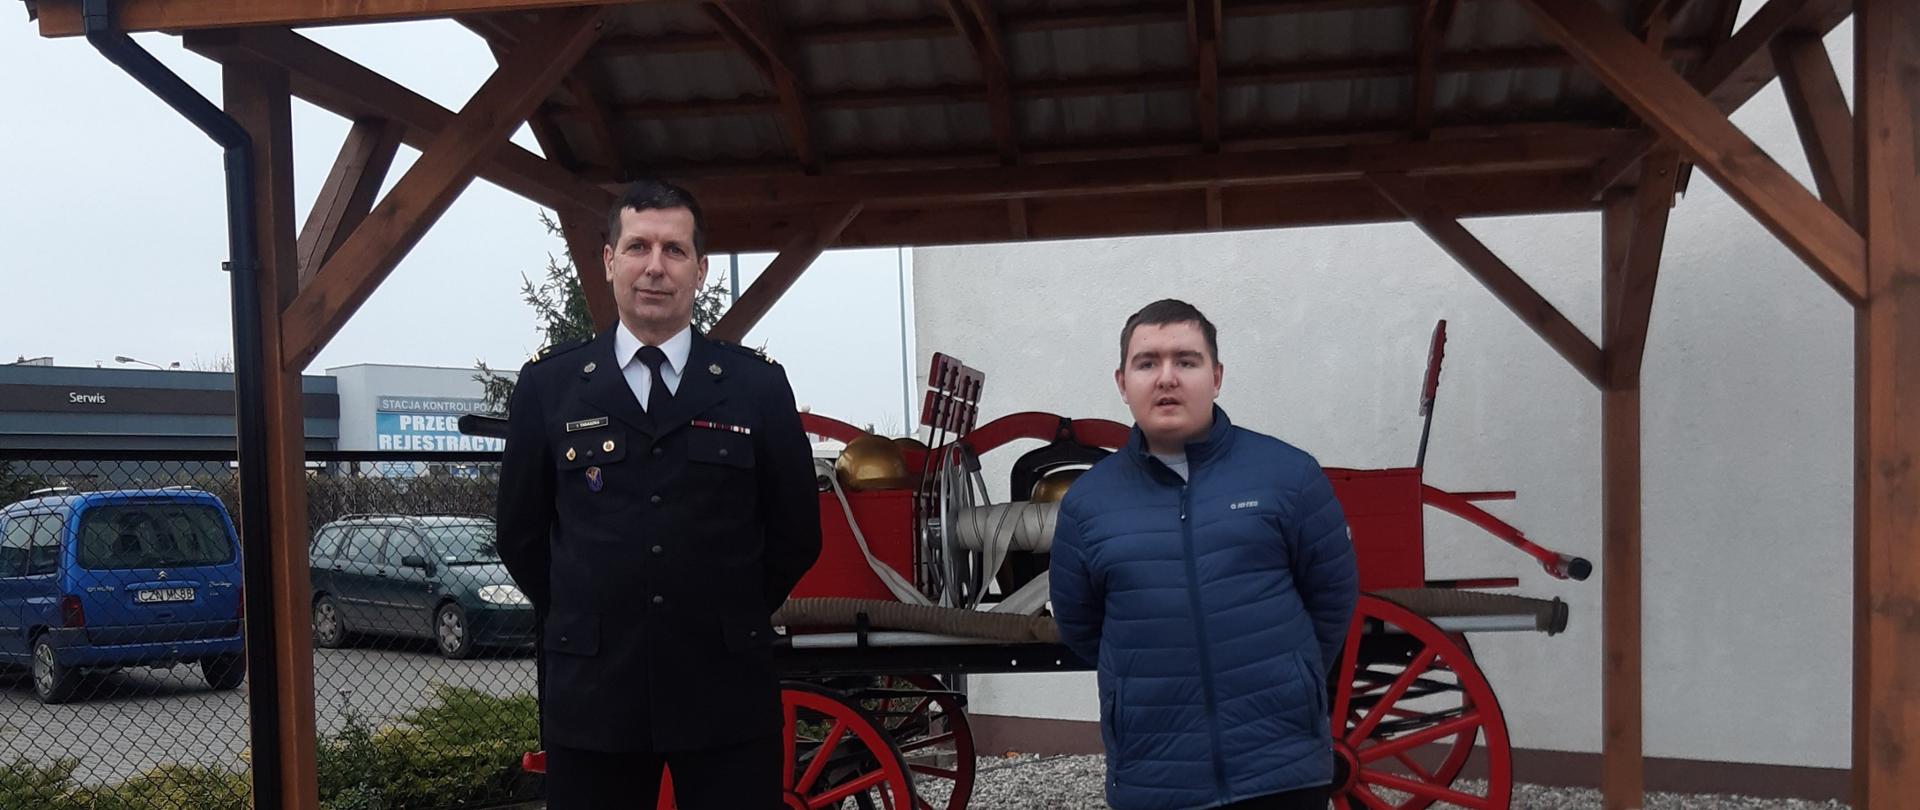 Młody pasjonat ratownictwa z wizytą w KP PSP Inowrocław